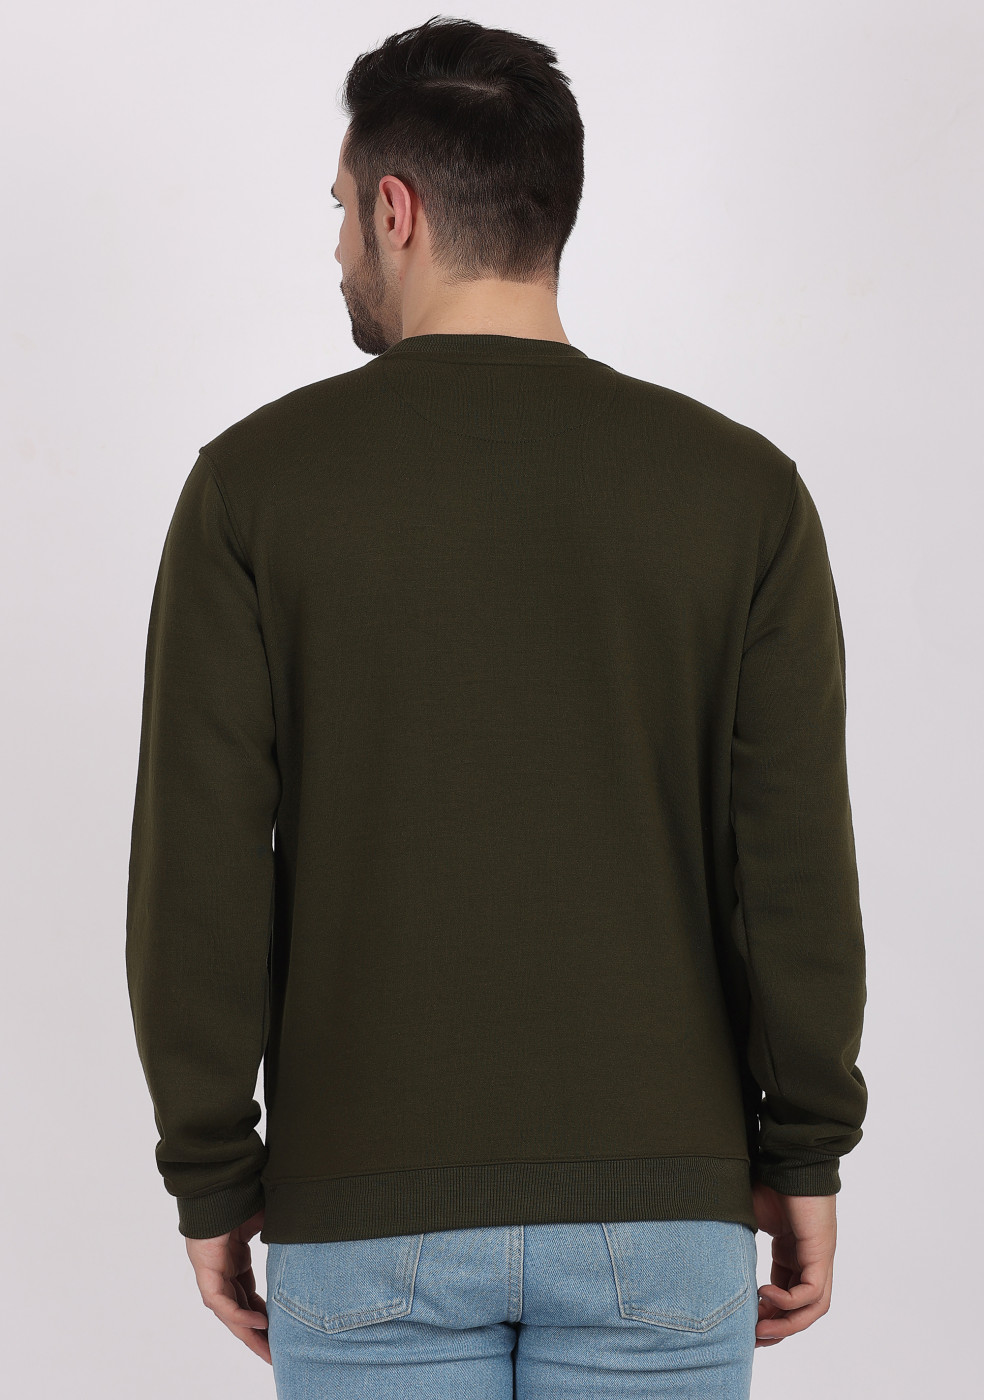 HUKH Olive Color Sweatshirt For Men